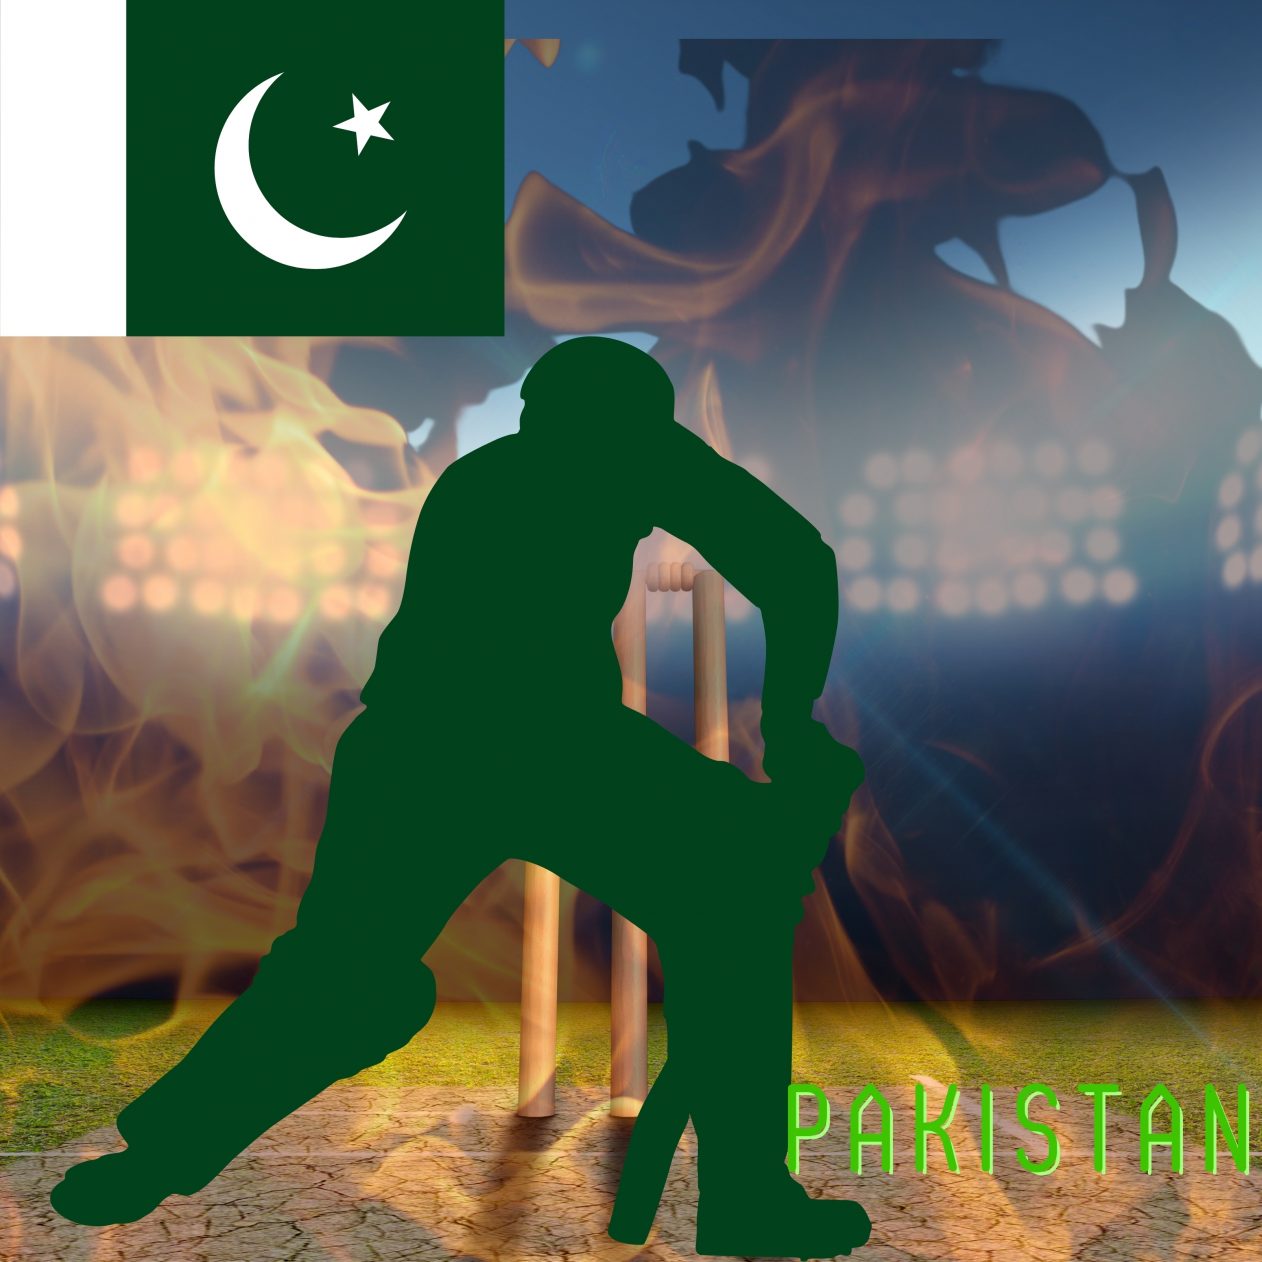 1262x1262 Parallax wallpaper 4k Pakistan Cricket Stadium iPad Wallpaper 1262x1262 pixels resolution